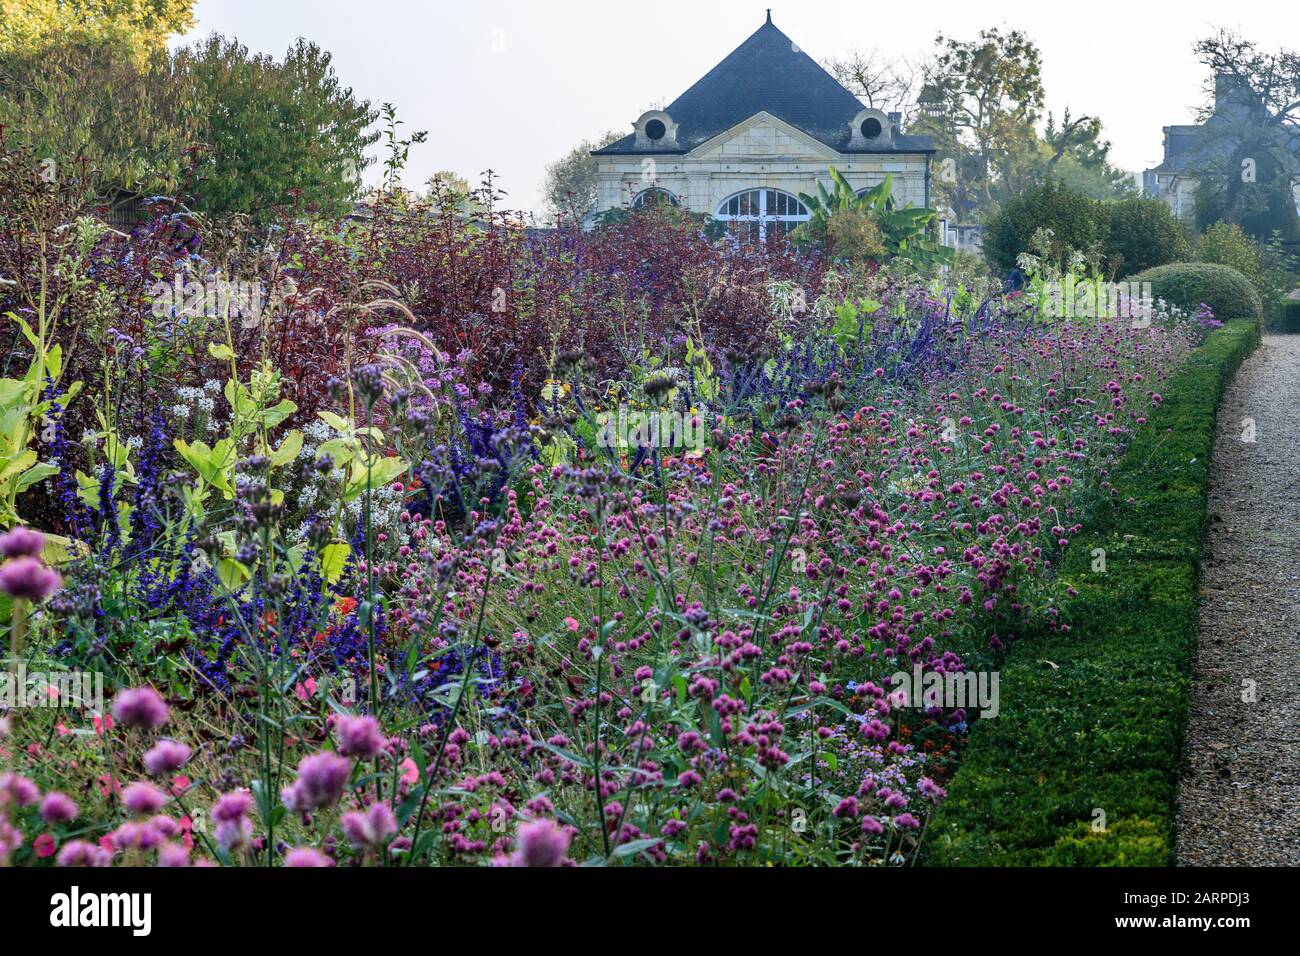 Francia, Indre et Loire, Valle della Loira elencati come Patrimonio Mondiale dall'UNESCO, Rigny Usse, Chateau d'Usse giardini, piante annuali fiorito nel mese di ottobre con Foto Stock